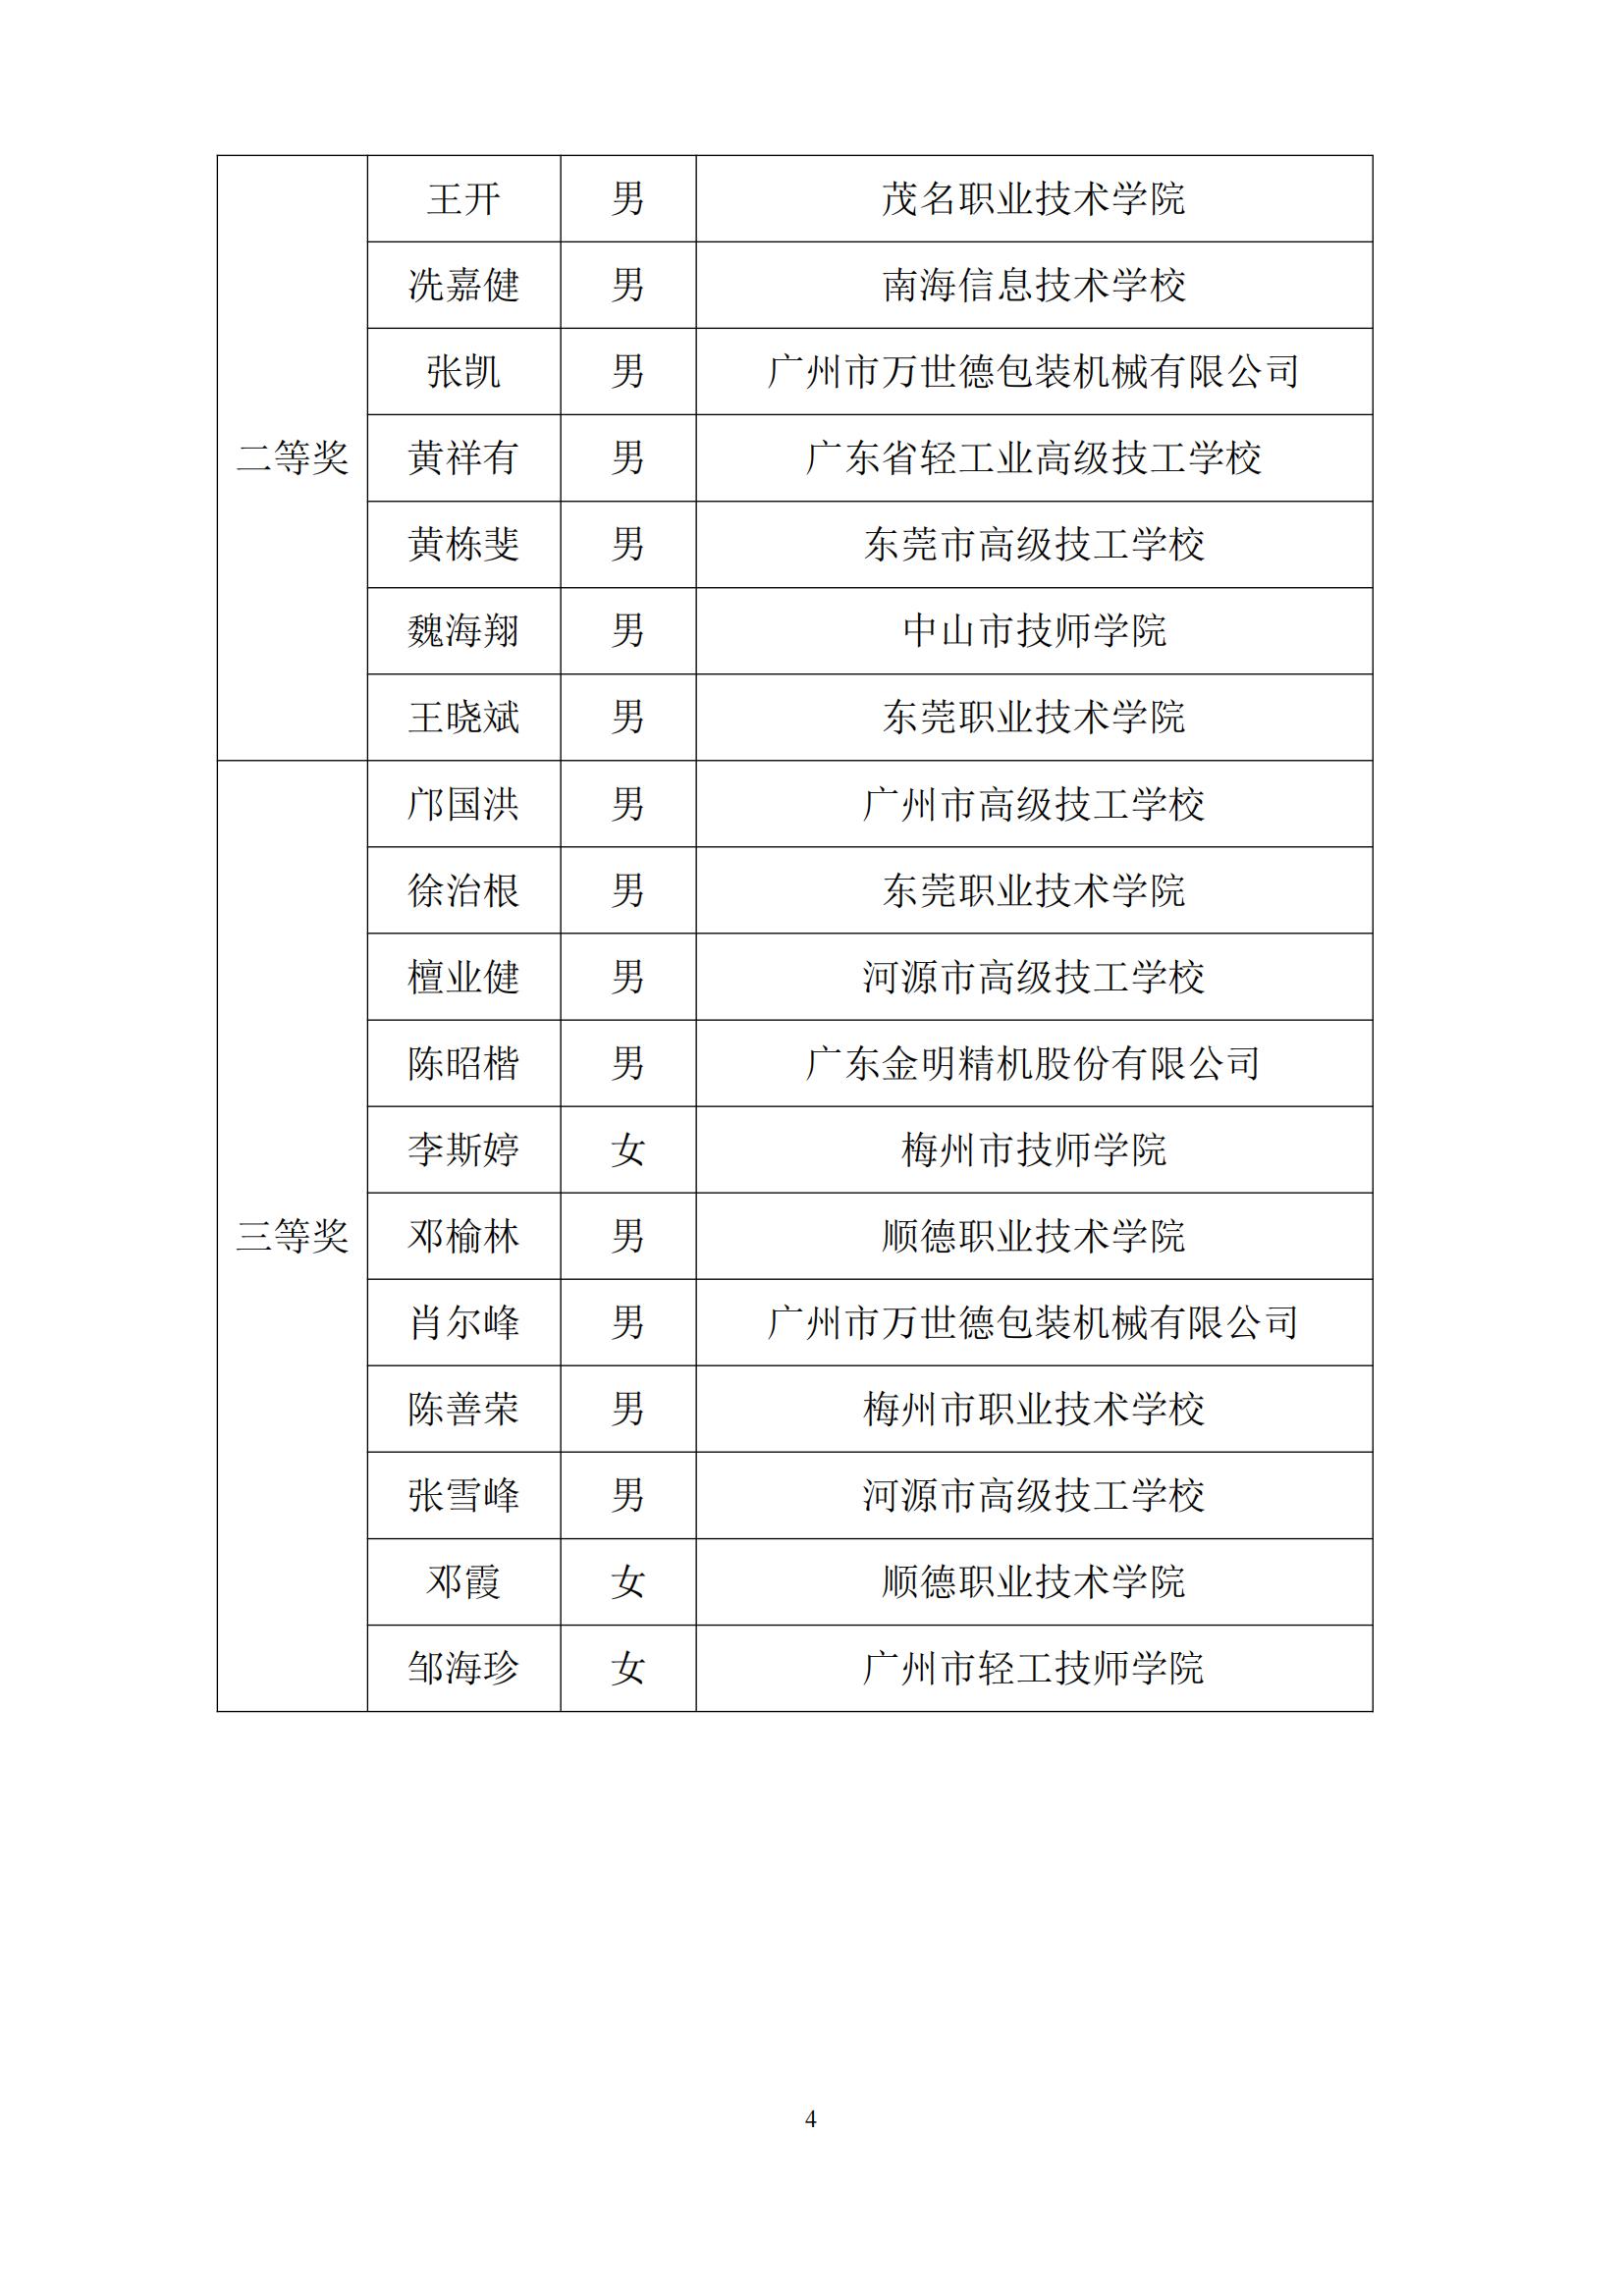 2011 年广东省可编程序系统控制设计师职业技能竞赛_03.jpg